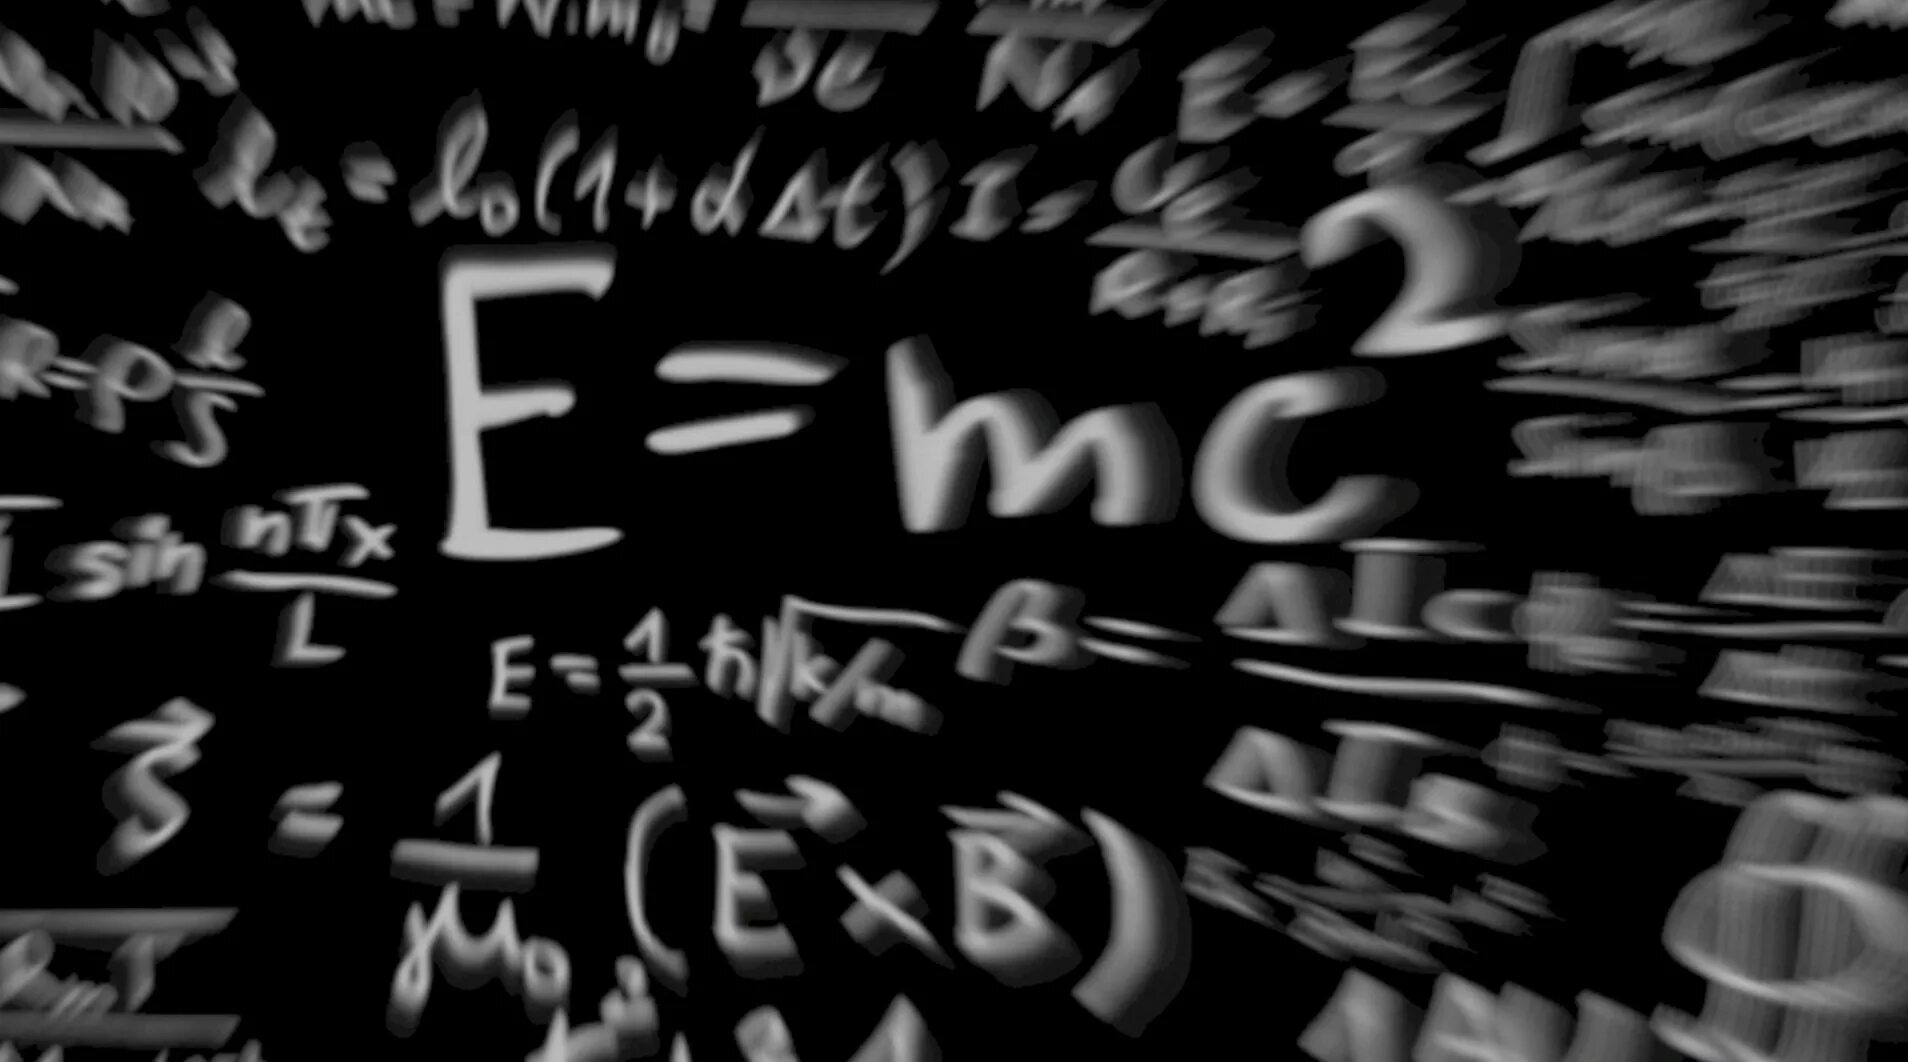 Е равно мс. Е мс2. Уравнение Эйнштейна е мс2. Формула е мс2.